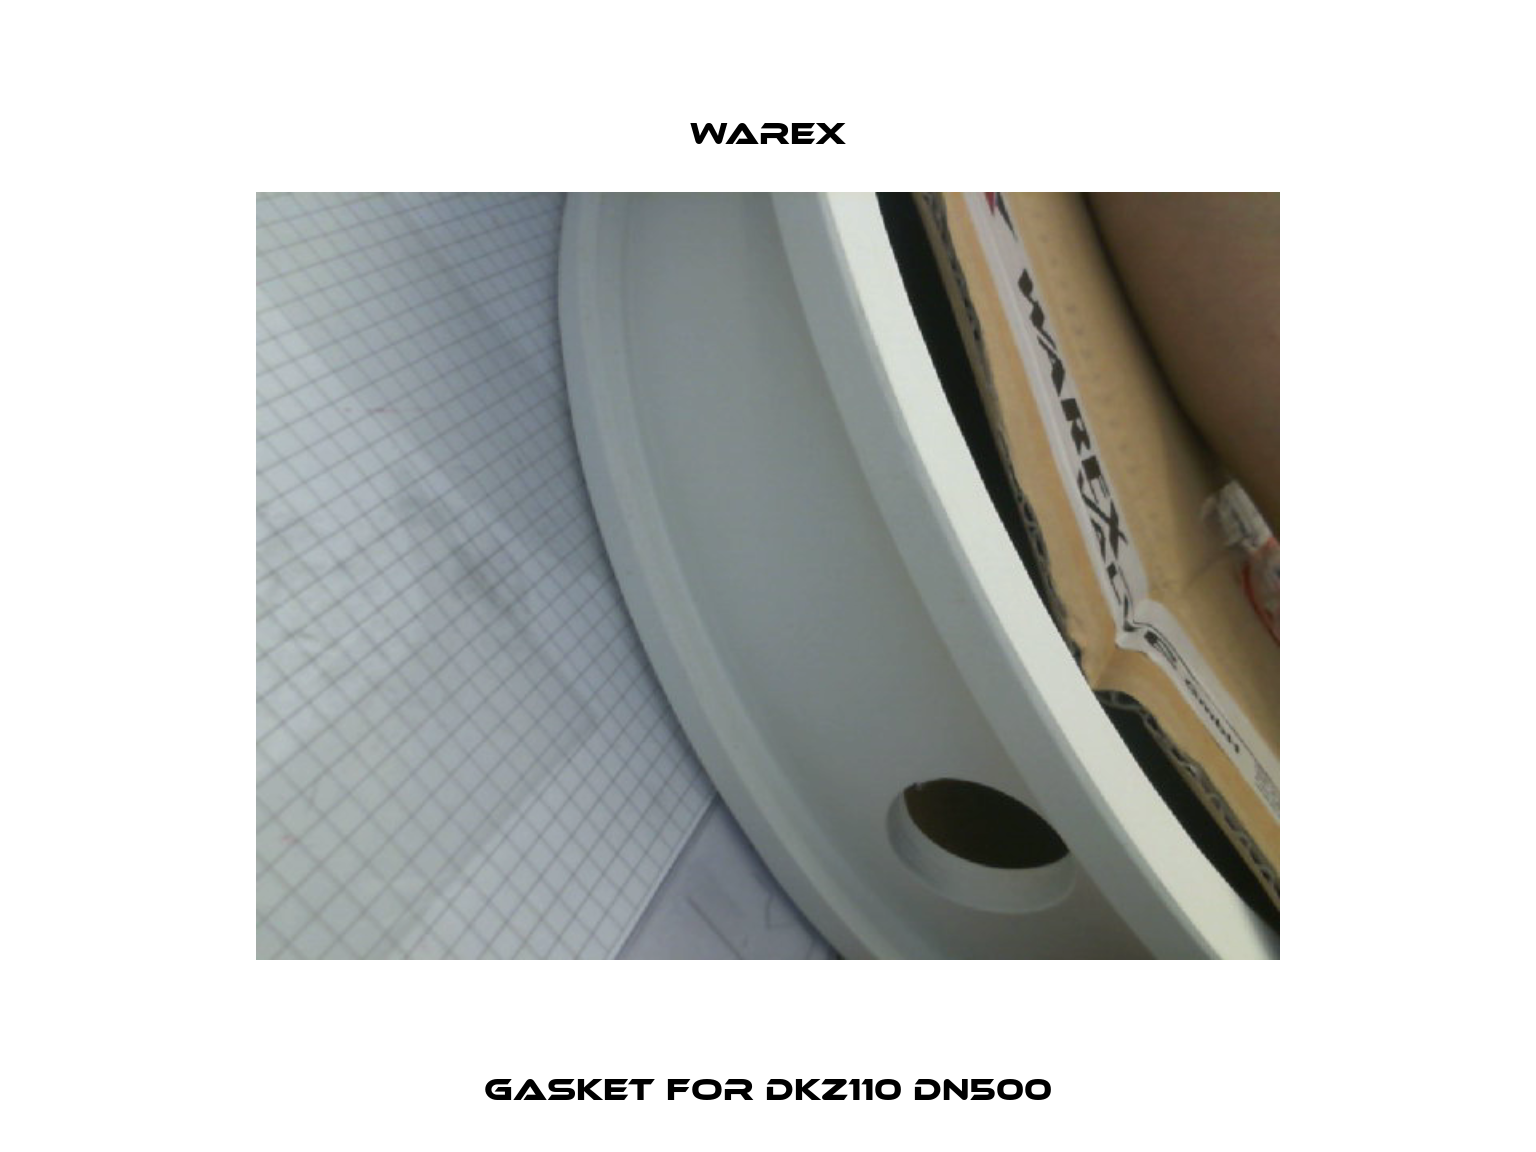 Gasket for DKZ110 DN500 Warex